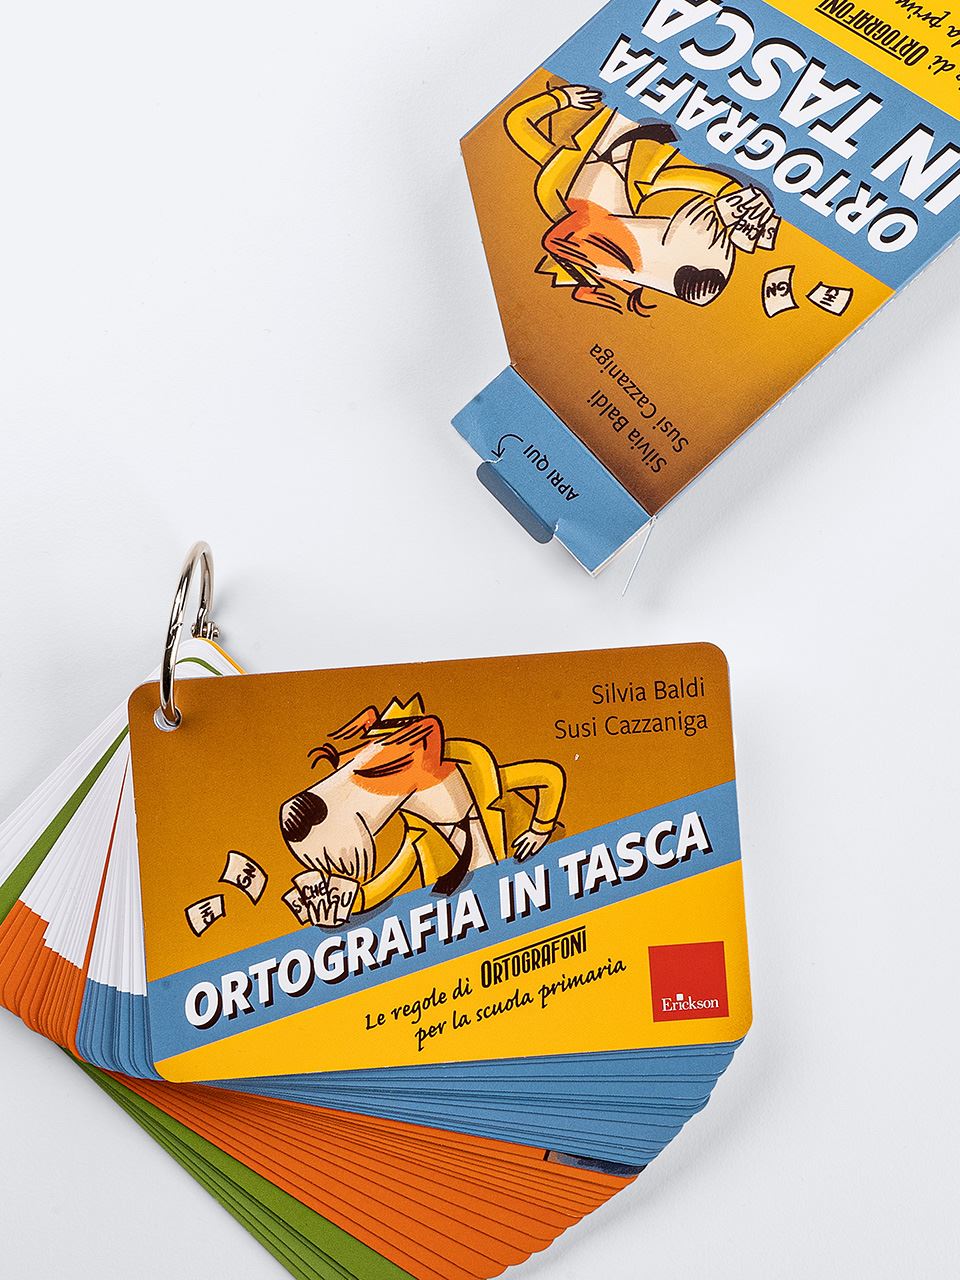 Ortografia in tasca: 40 flash card per risolvere i dubbi ortografici 2